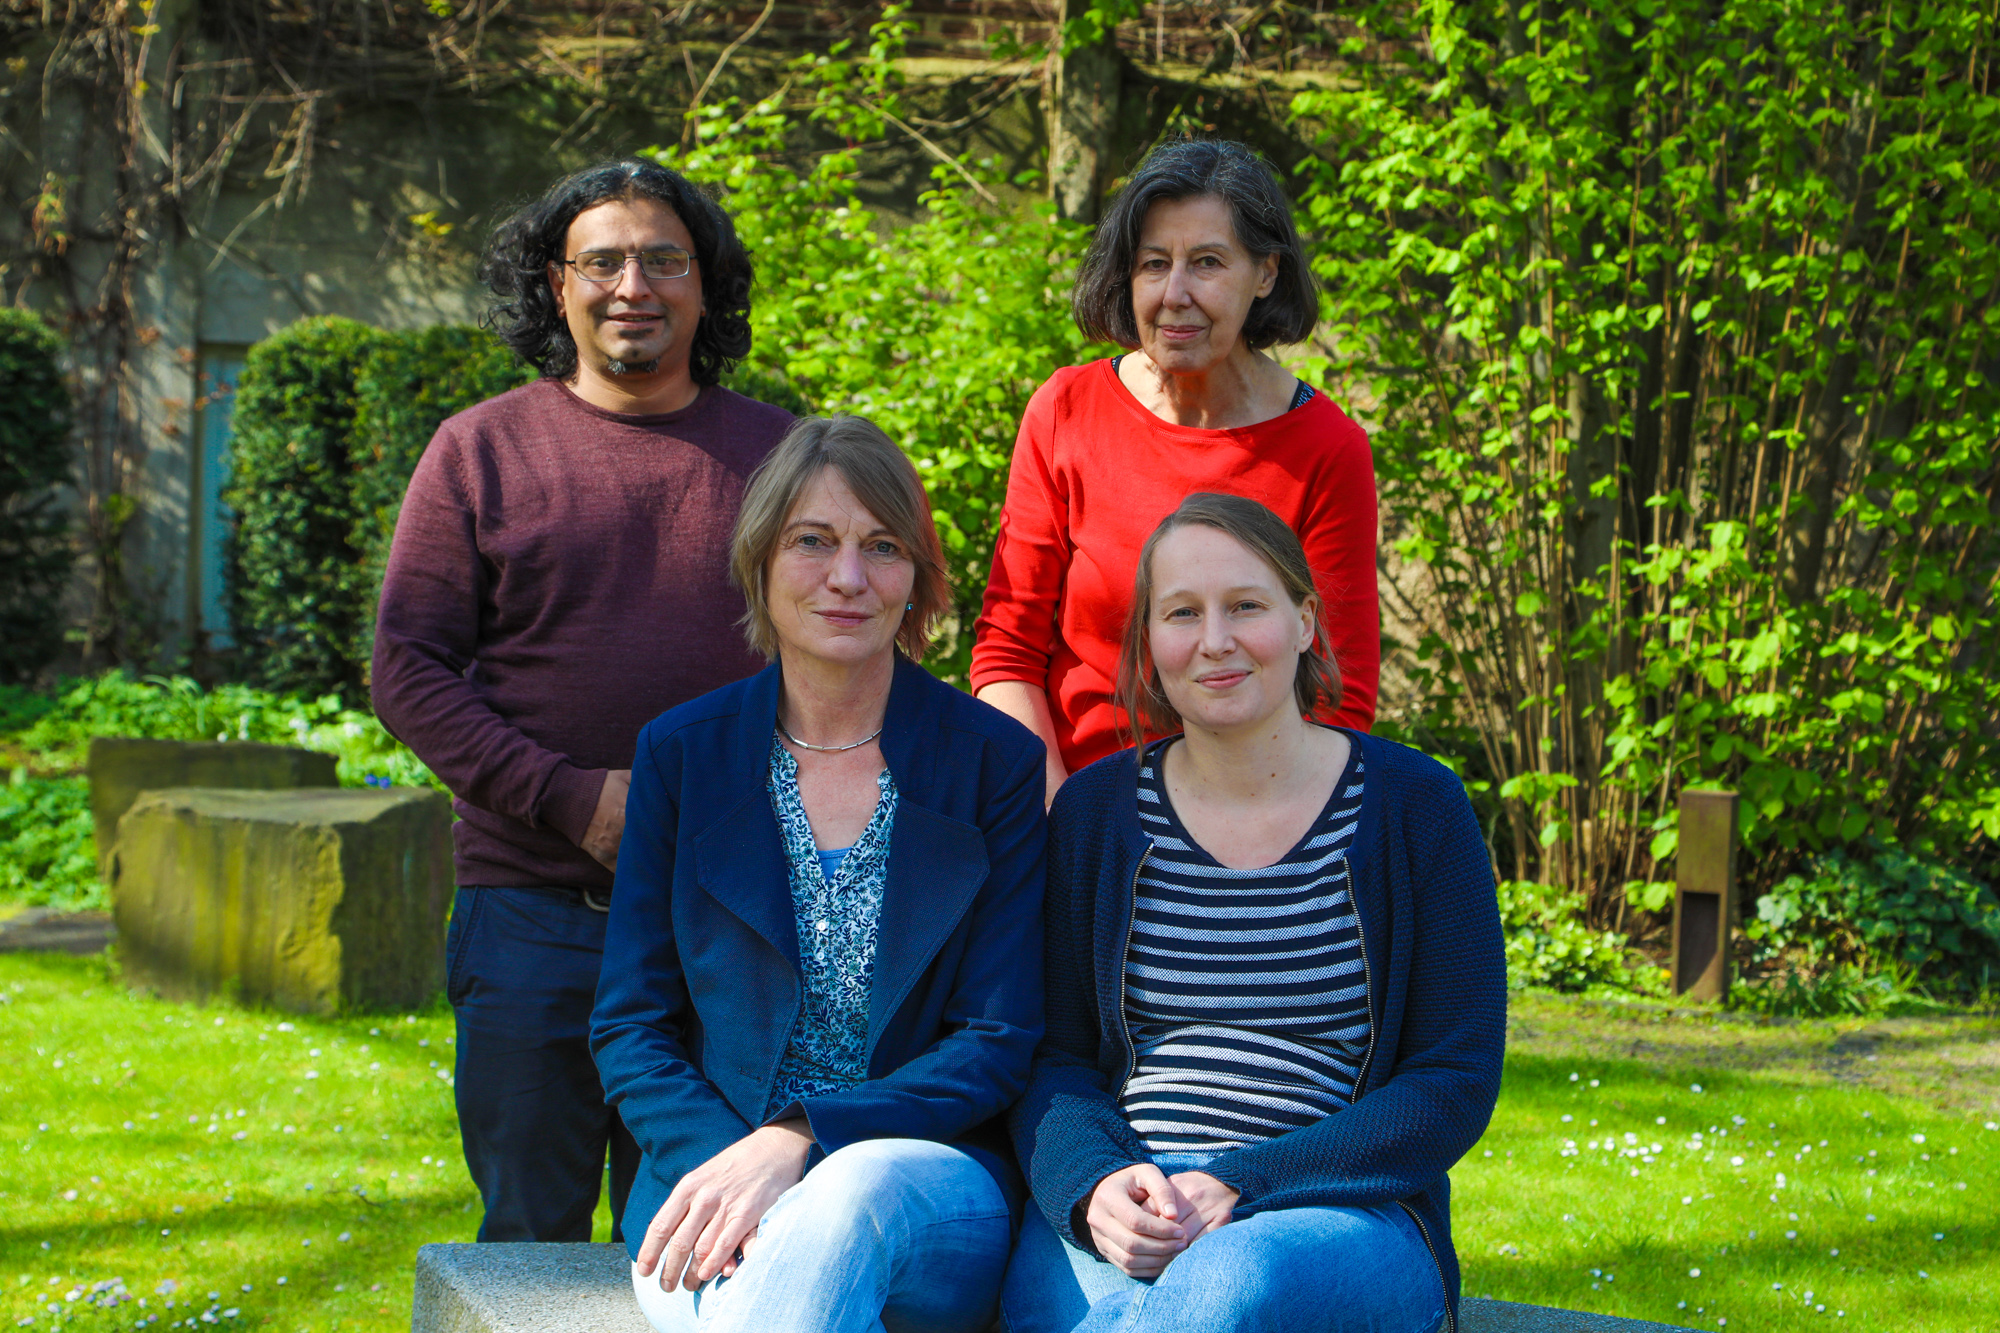 Starkes Team mit viel Kompetenz: Neben Rita Eschbach (links sitzend) beraten Charlotte Pilatus, Ilse Wanie-Blendermann und David Krämer (links stehend) Geflüchtete im Projekt Ankommen+.